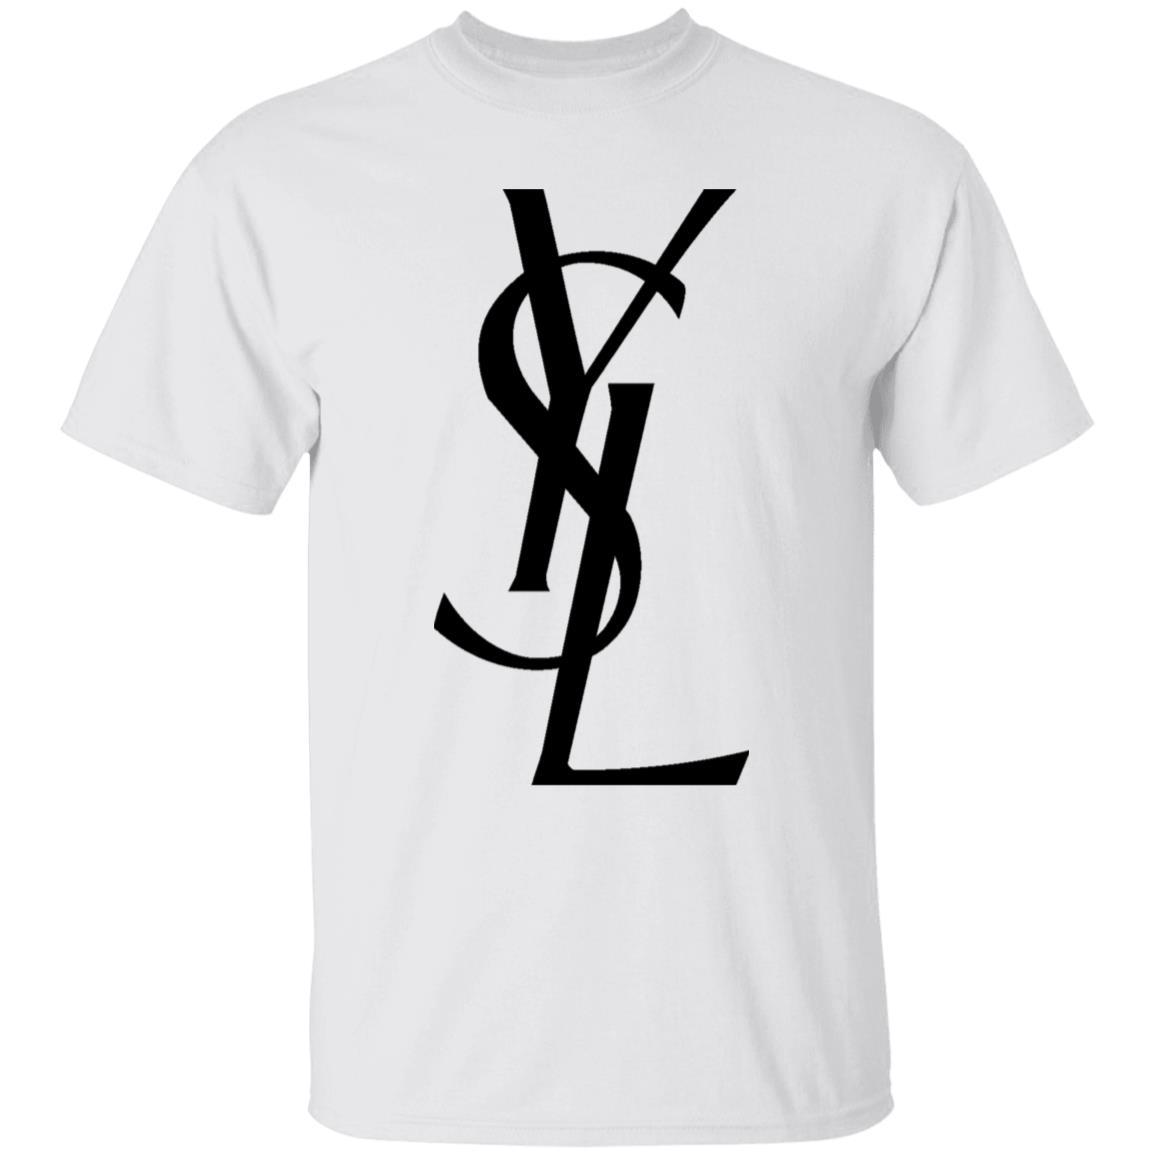 Ysl T-Shirt